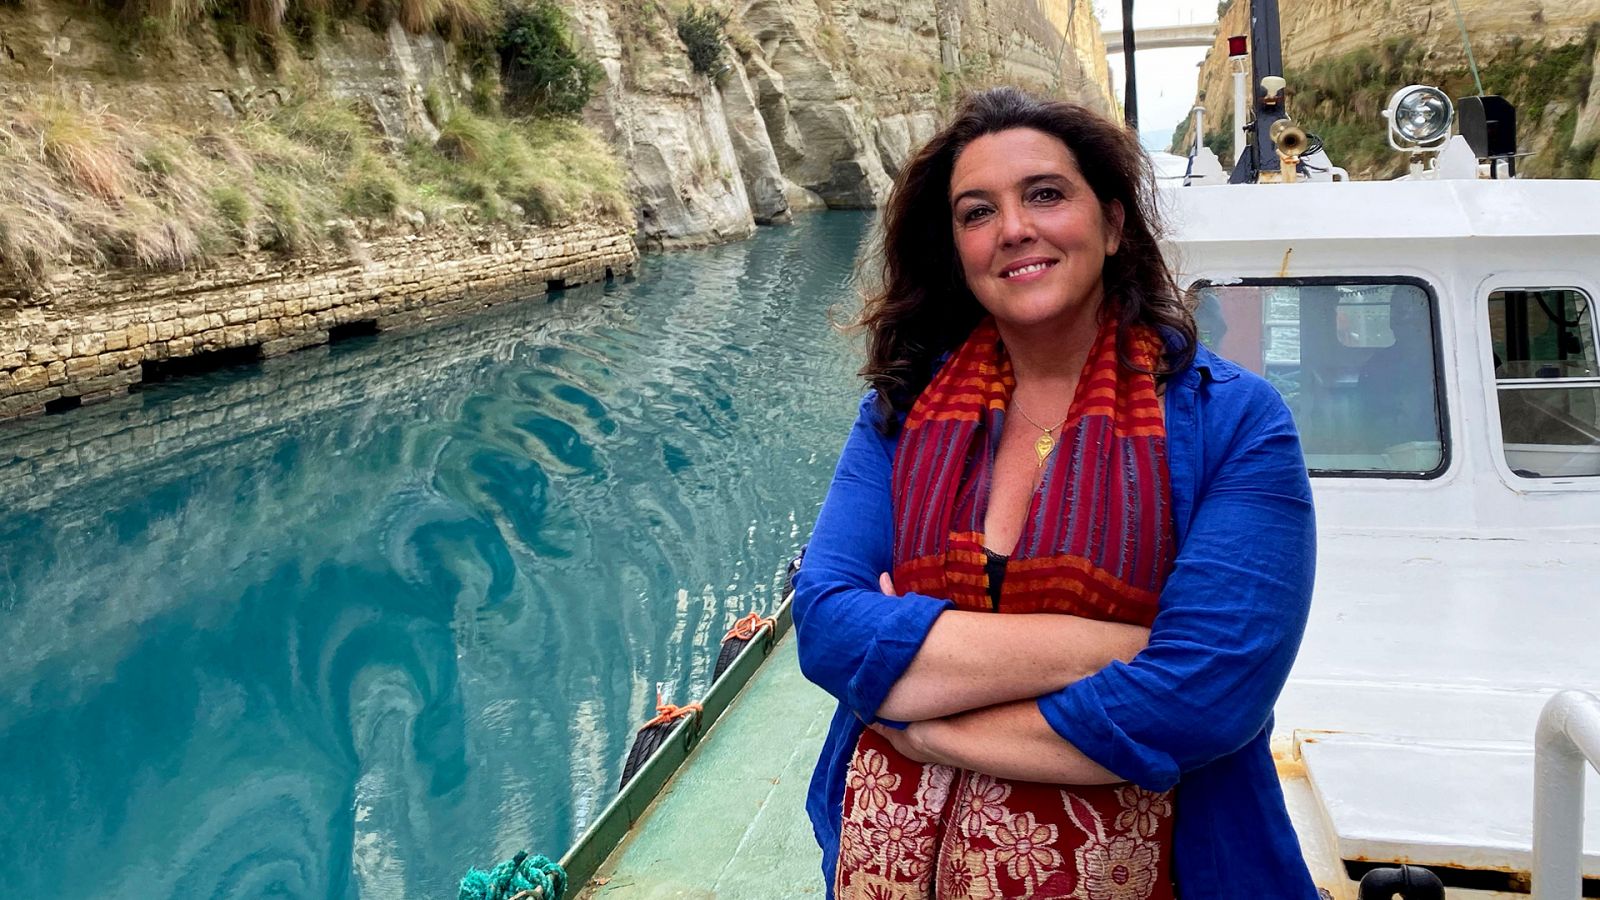 Episodio 6: Canal de Corinto, Corfu, Itaca - Odisea por las islas griegas con Bettany Hugues - Documental en RTVE